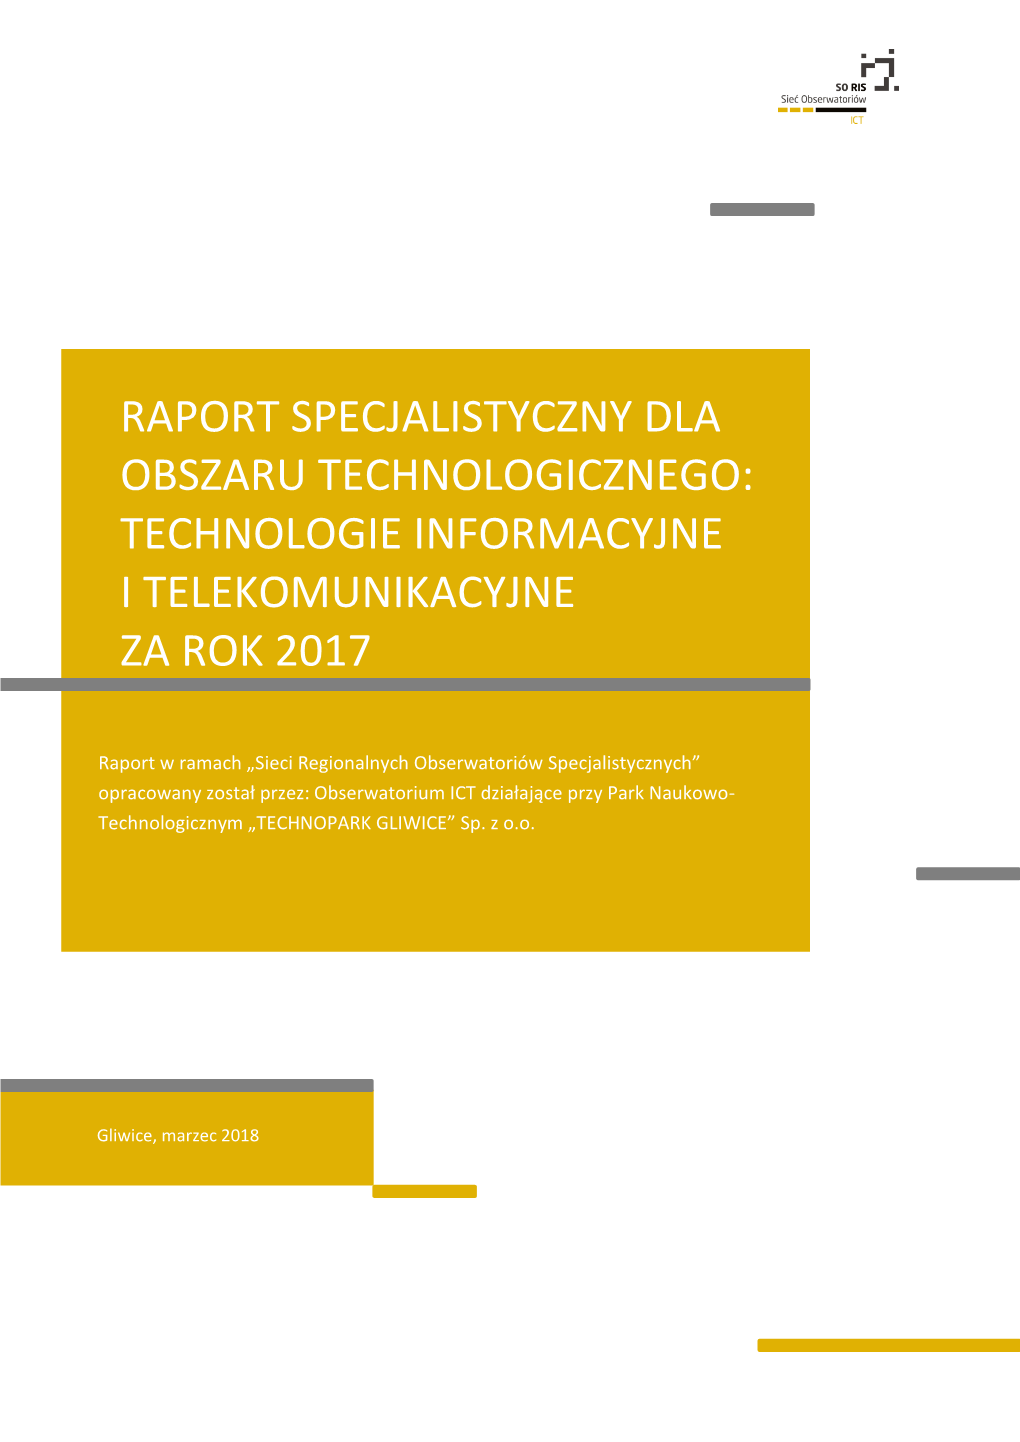 Raport Specjalistyczny Dla Obszaru Technologicznego: Technologie Informacyjne I Telekomunikacyjne Za Rok 2017